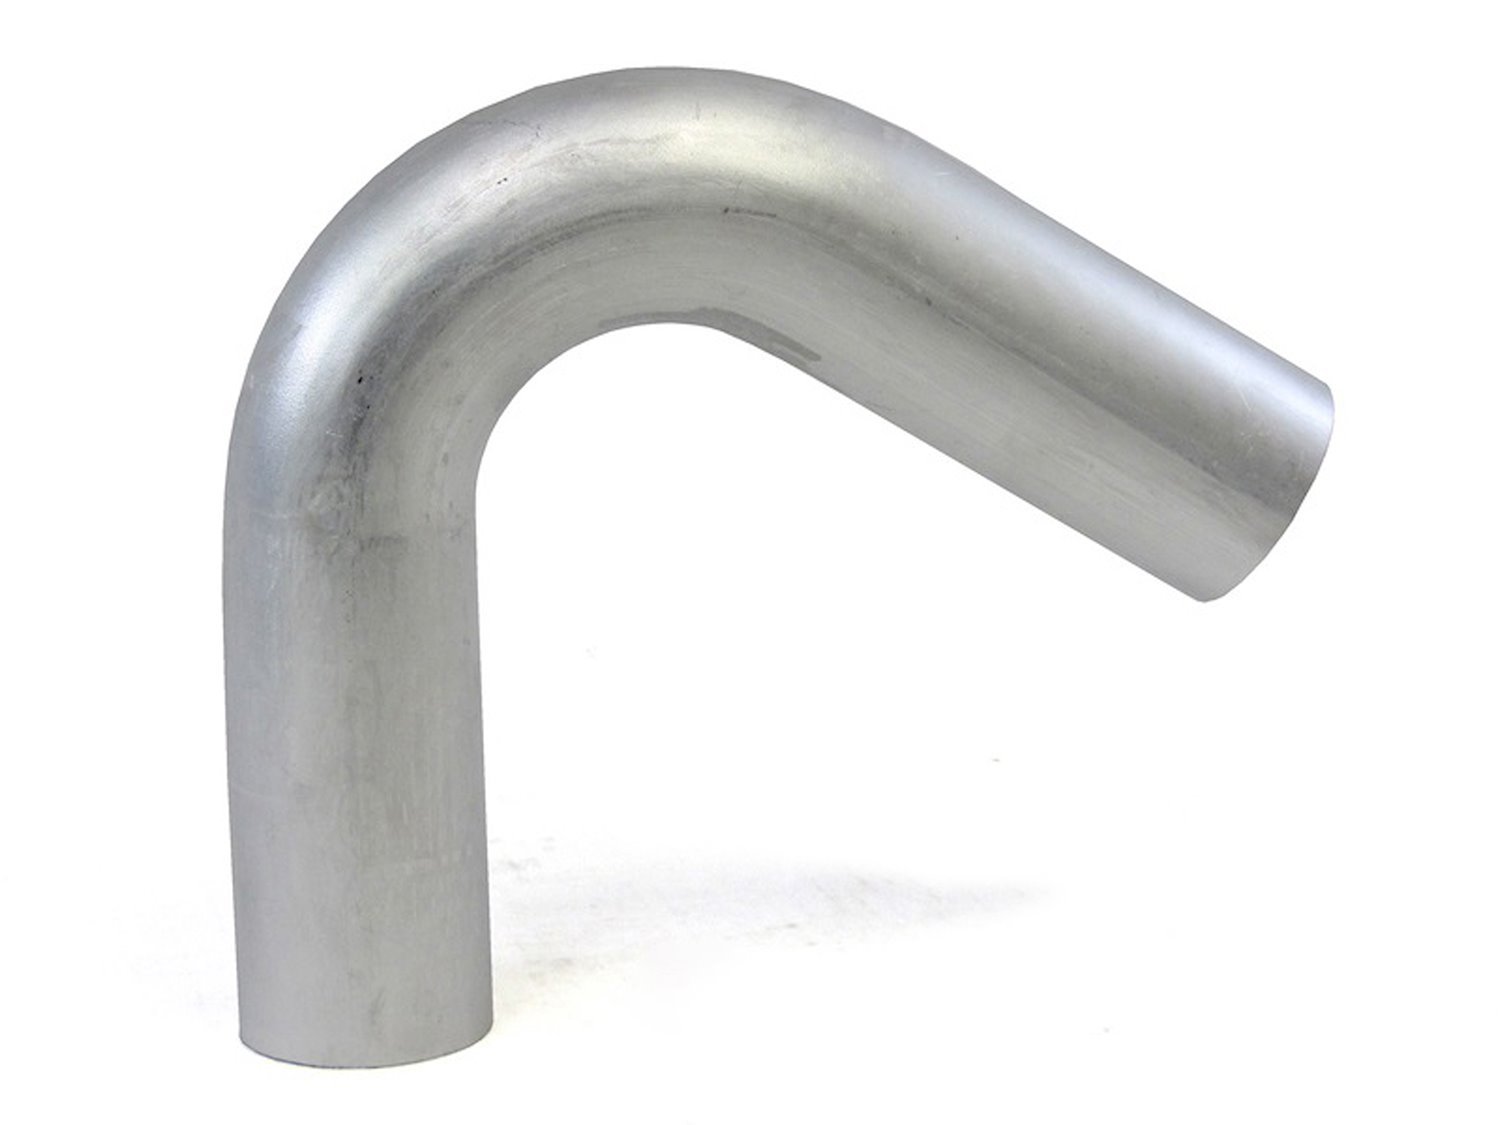 AT120-450-CLR-6 Aluminum Elbow Tube, 6061 Aluminum, 120-Degree Bend Elbow Tubing, 4-1/2 in. OD, Large Radius, 6 in. CLR